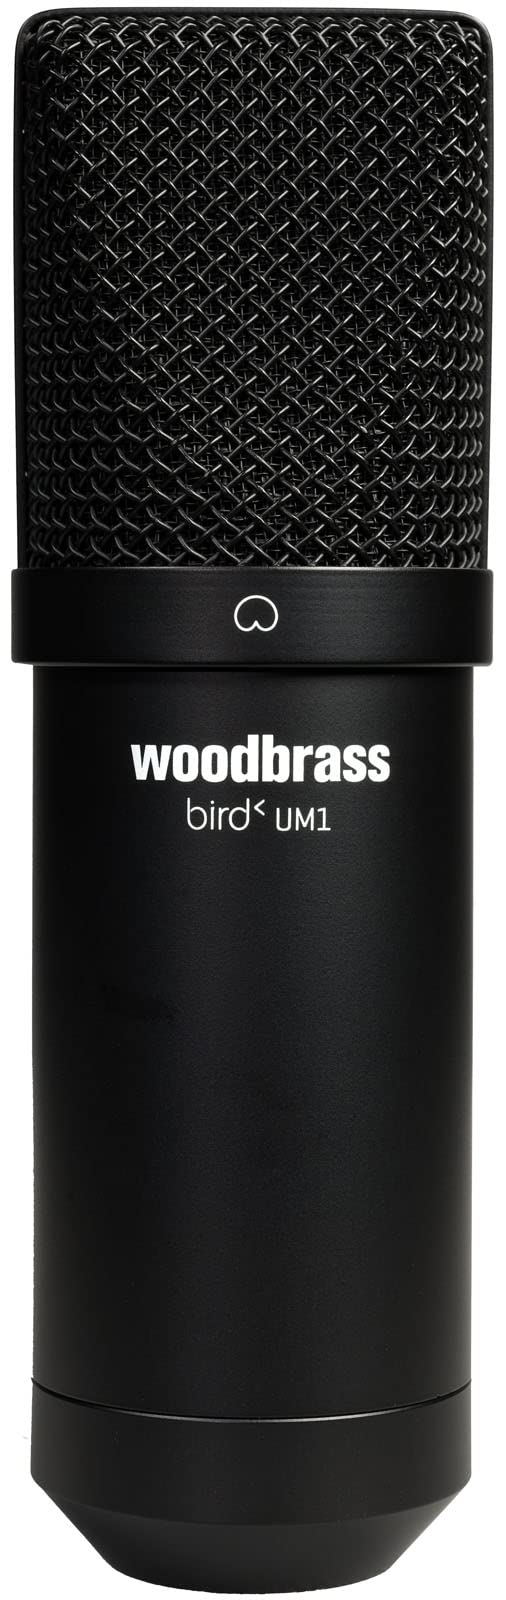 grand choix Bird Woodbrass UM1 Noir - Microphone USB Ca